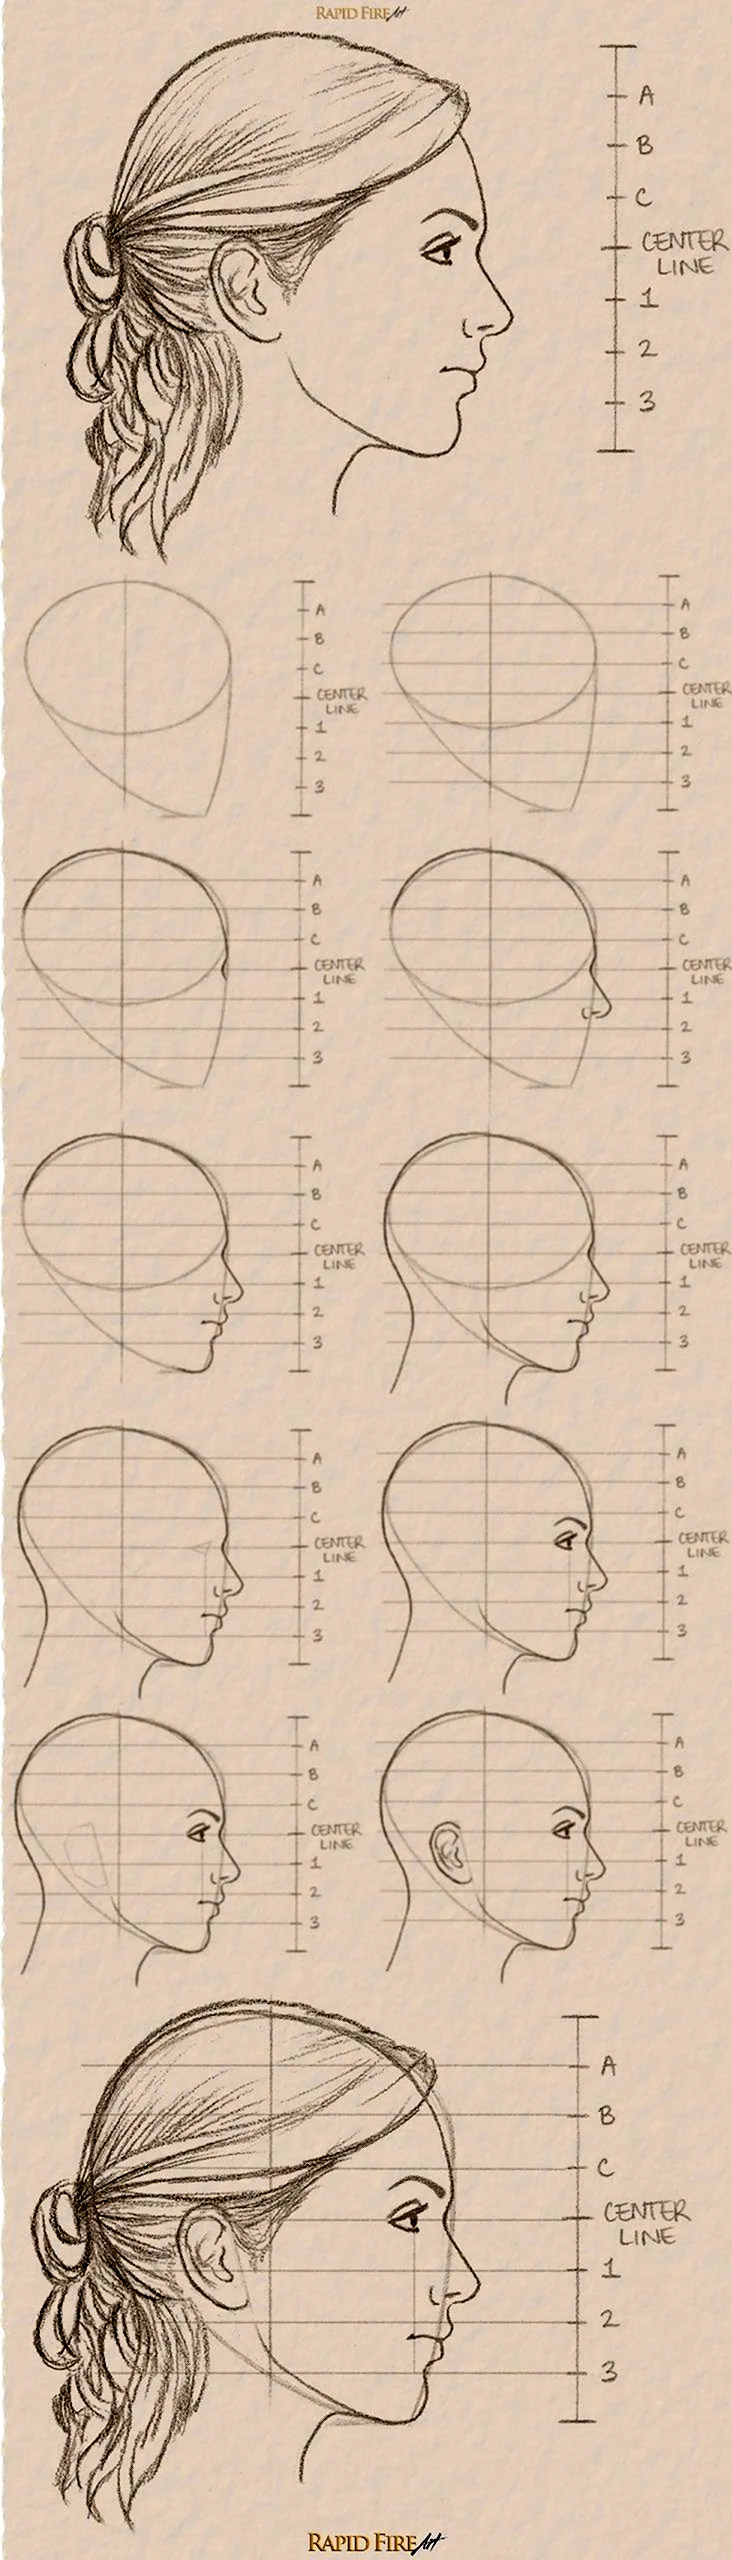 Схема рисования лица в профиль